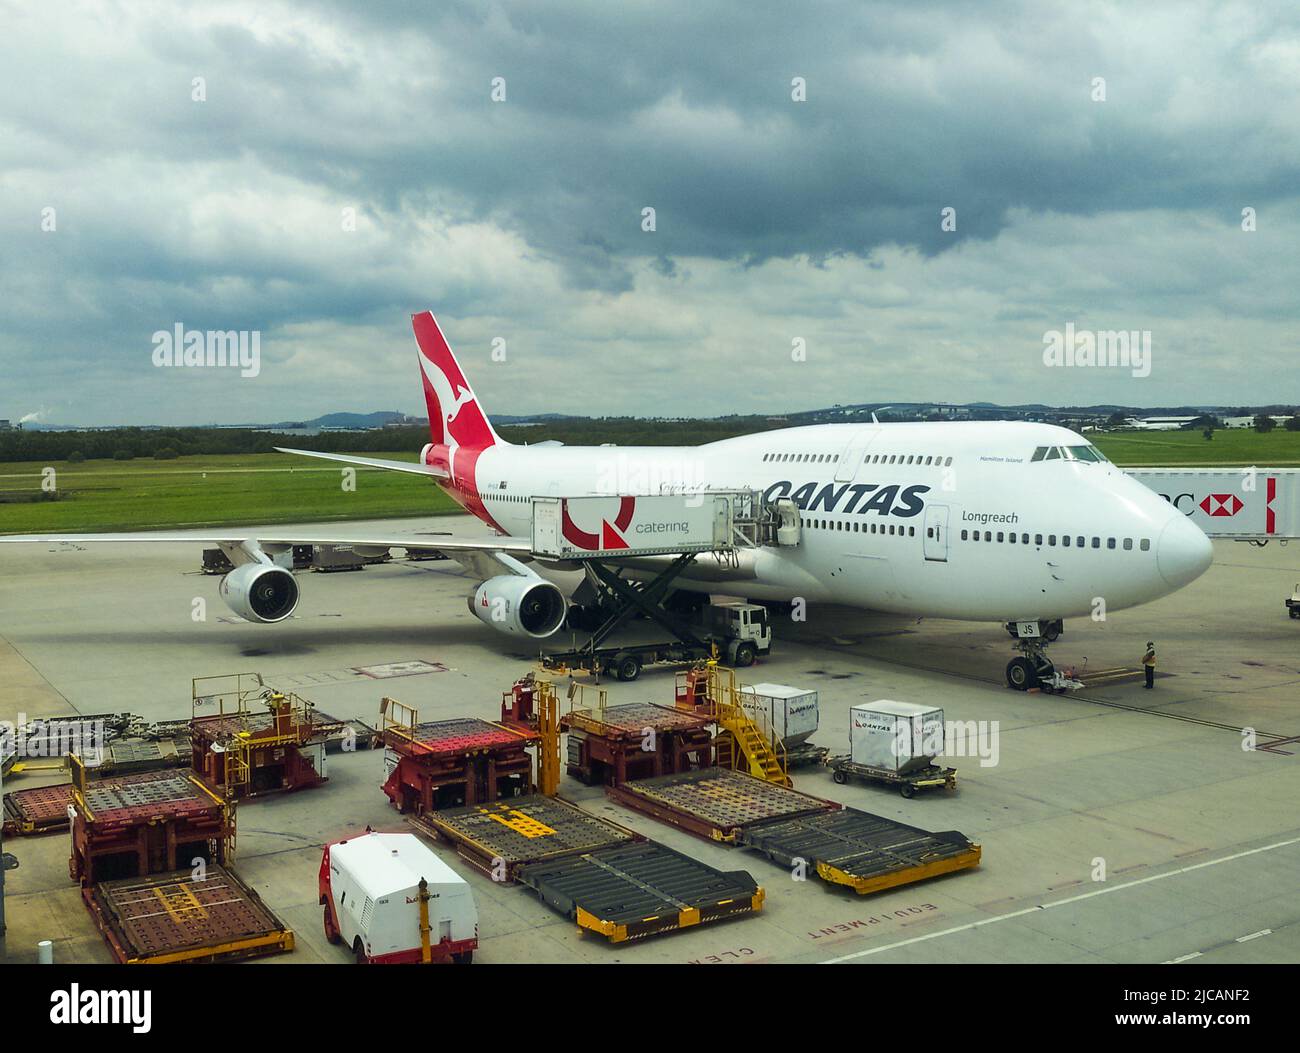 Avion Quantas sur le tarmac à l'aéroport sous ciel nuageux à Brisbane Queensland Australie 11 23 2013 Banque D'Images